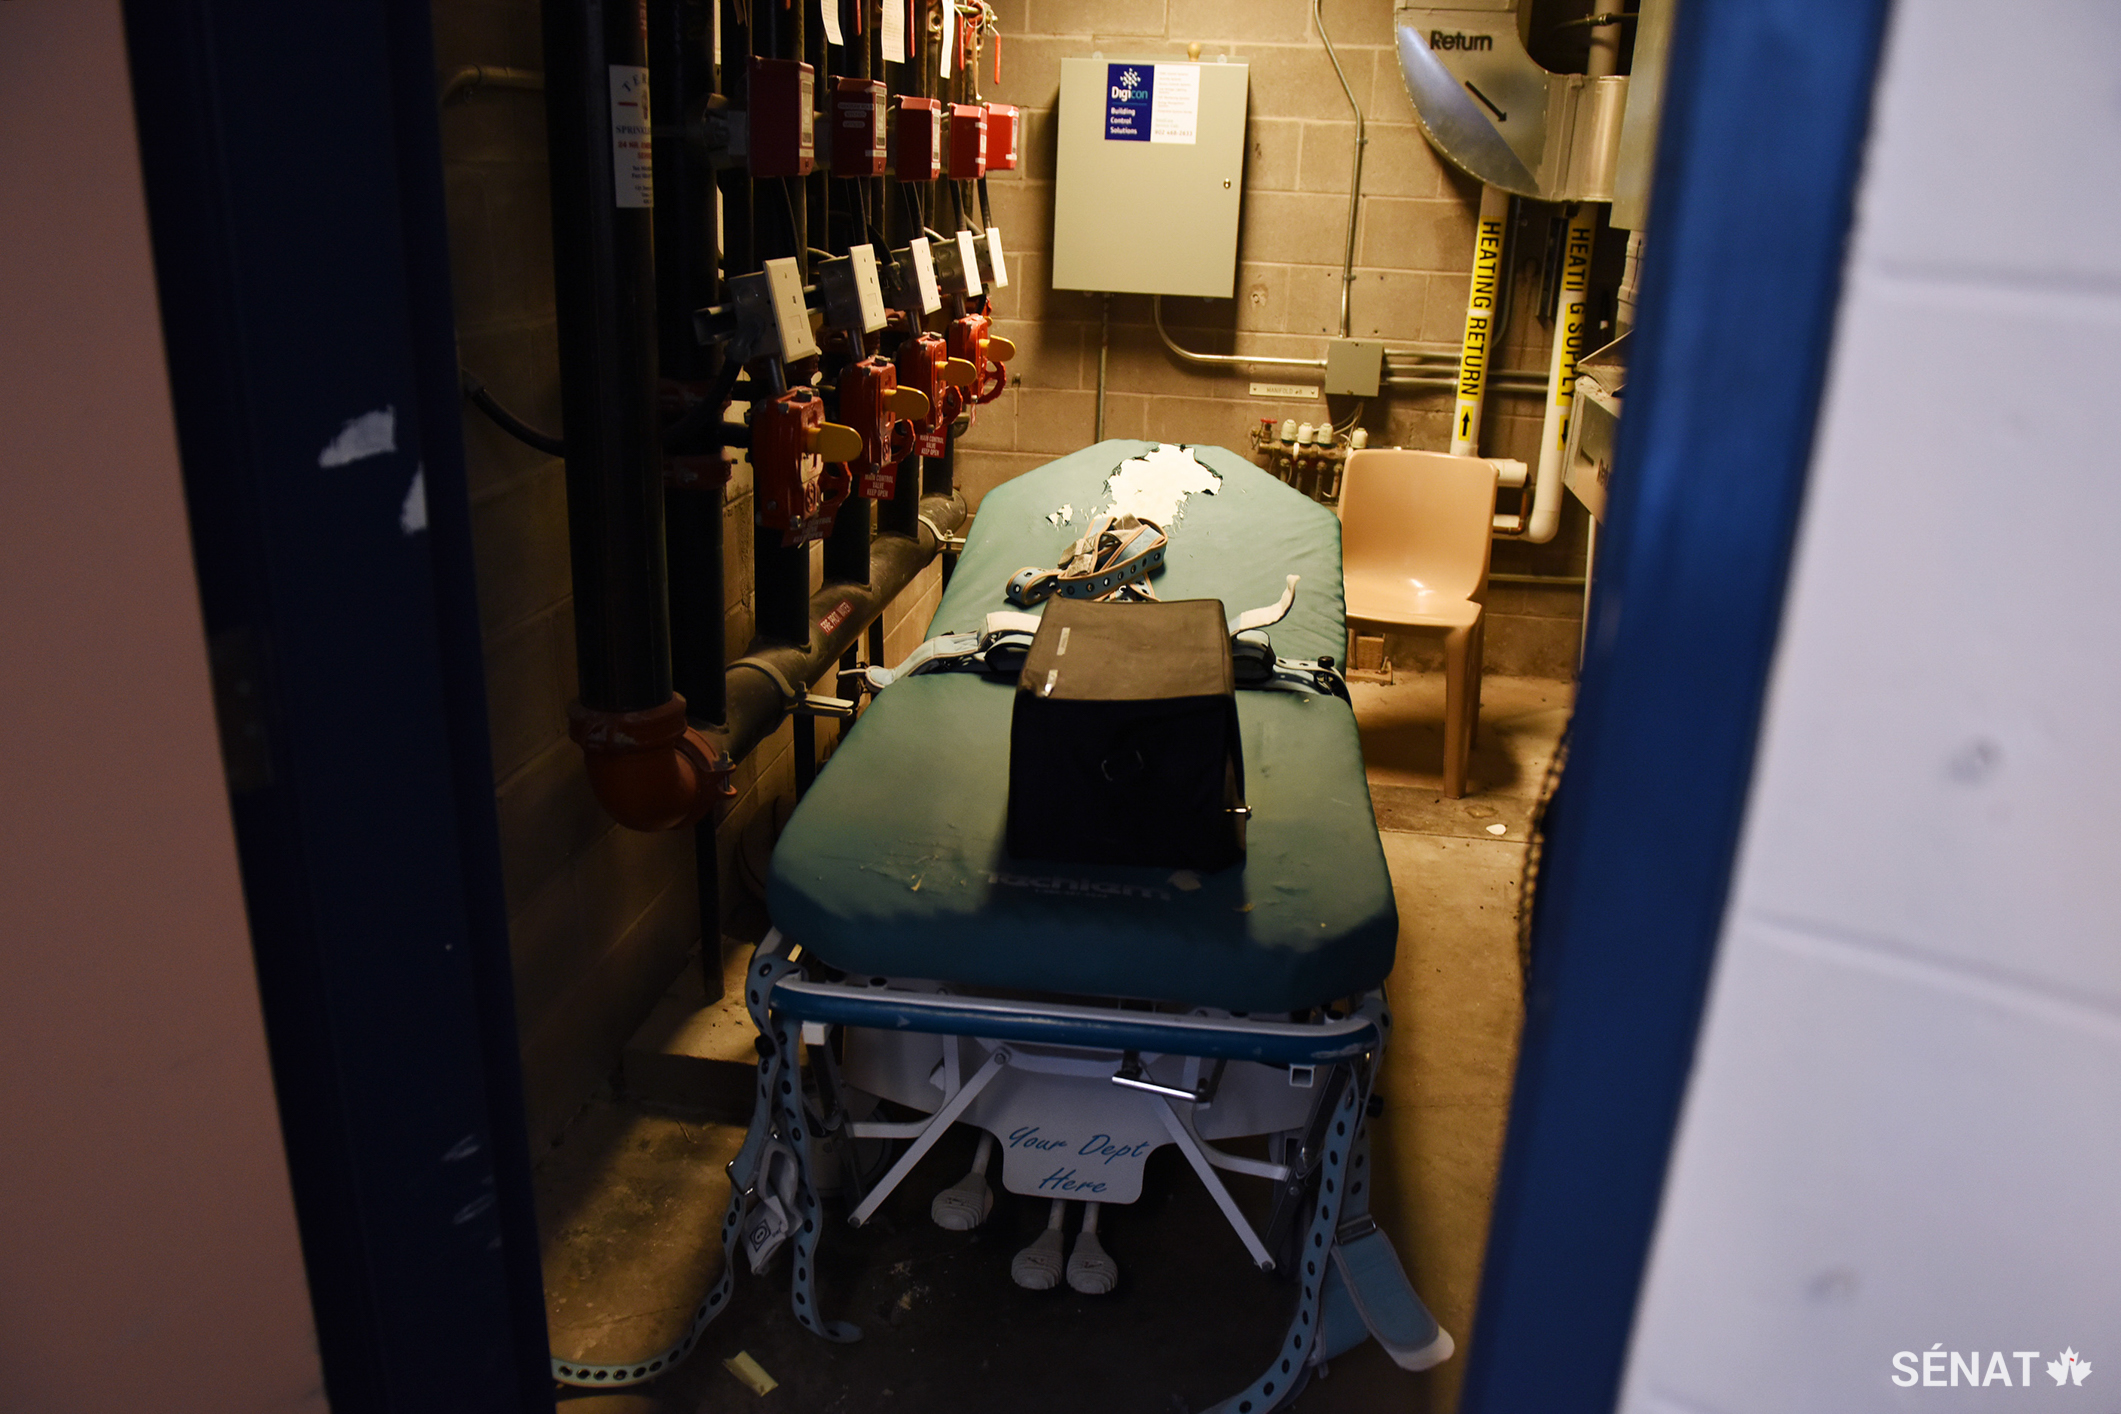 Un lit de contention se trouve dans une salle de rangement. Il est équipé de sangles et utilisé principalement pour les prisonnières qui se mutilent.